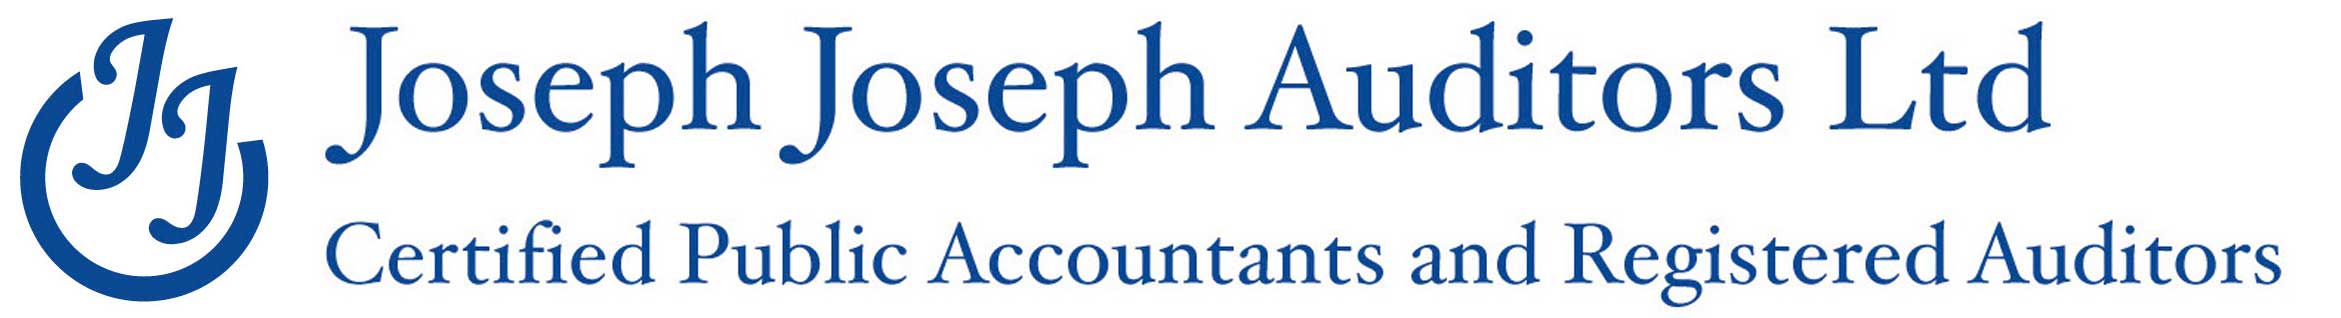 Joseph Joseph Auditors Ltd